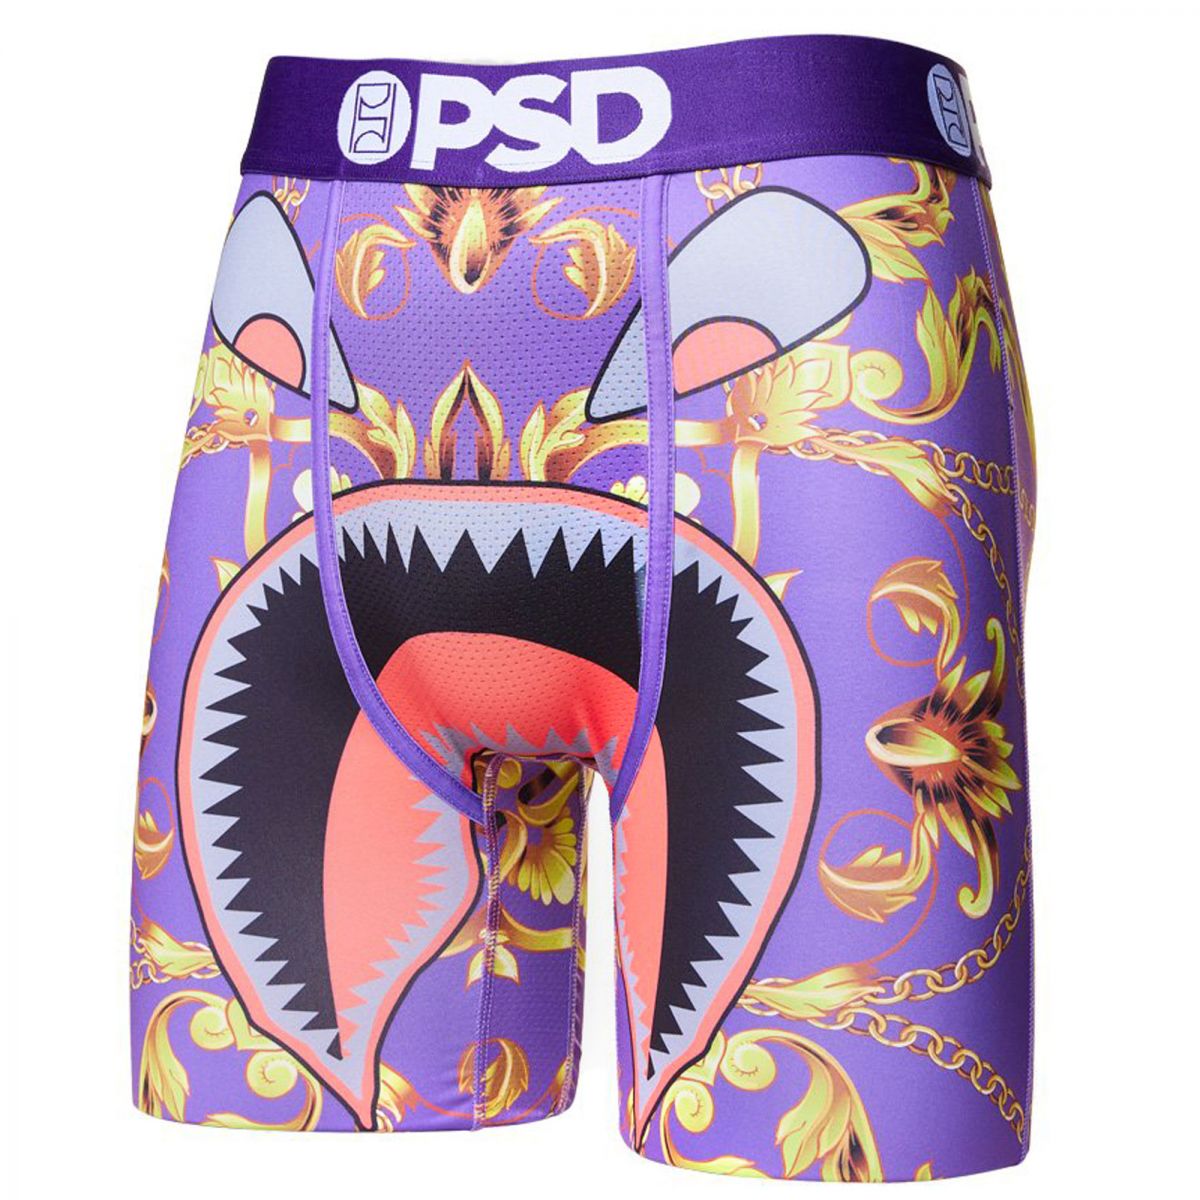 PSD Underwear Boxer Briefs - Red Capital